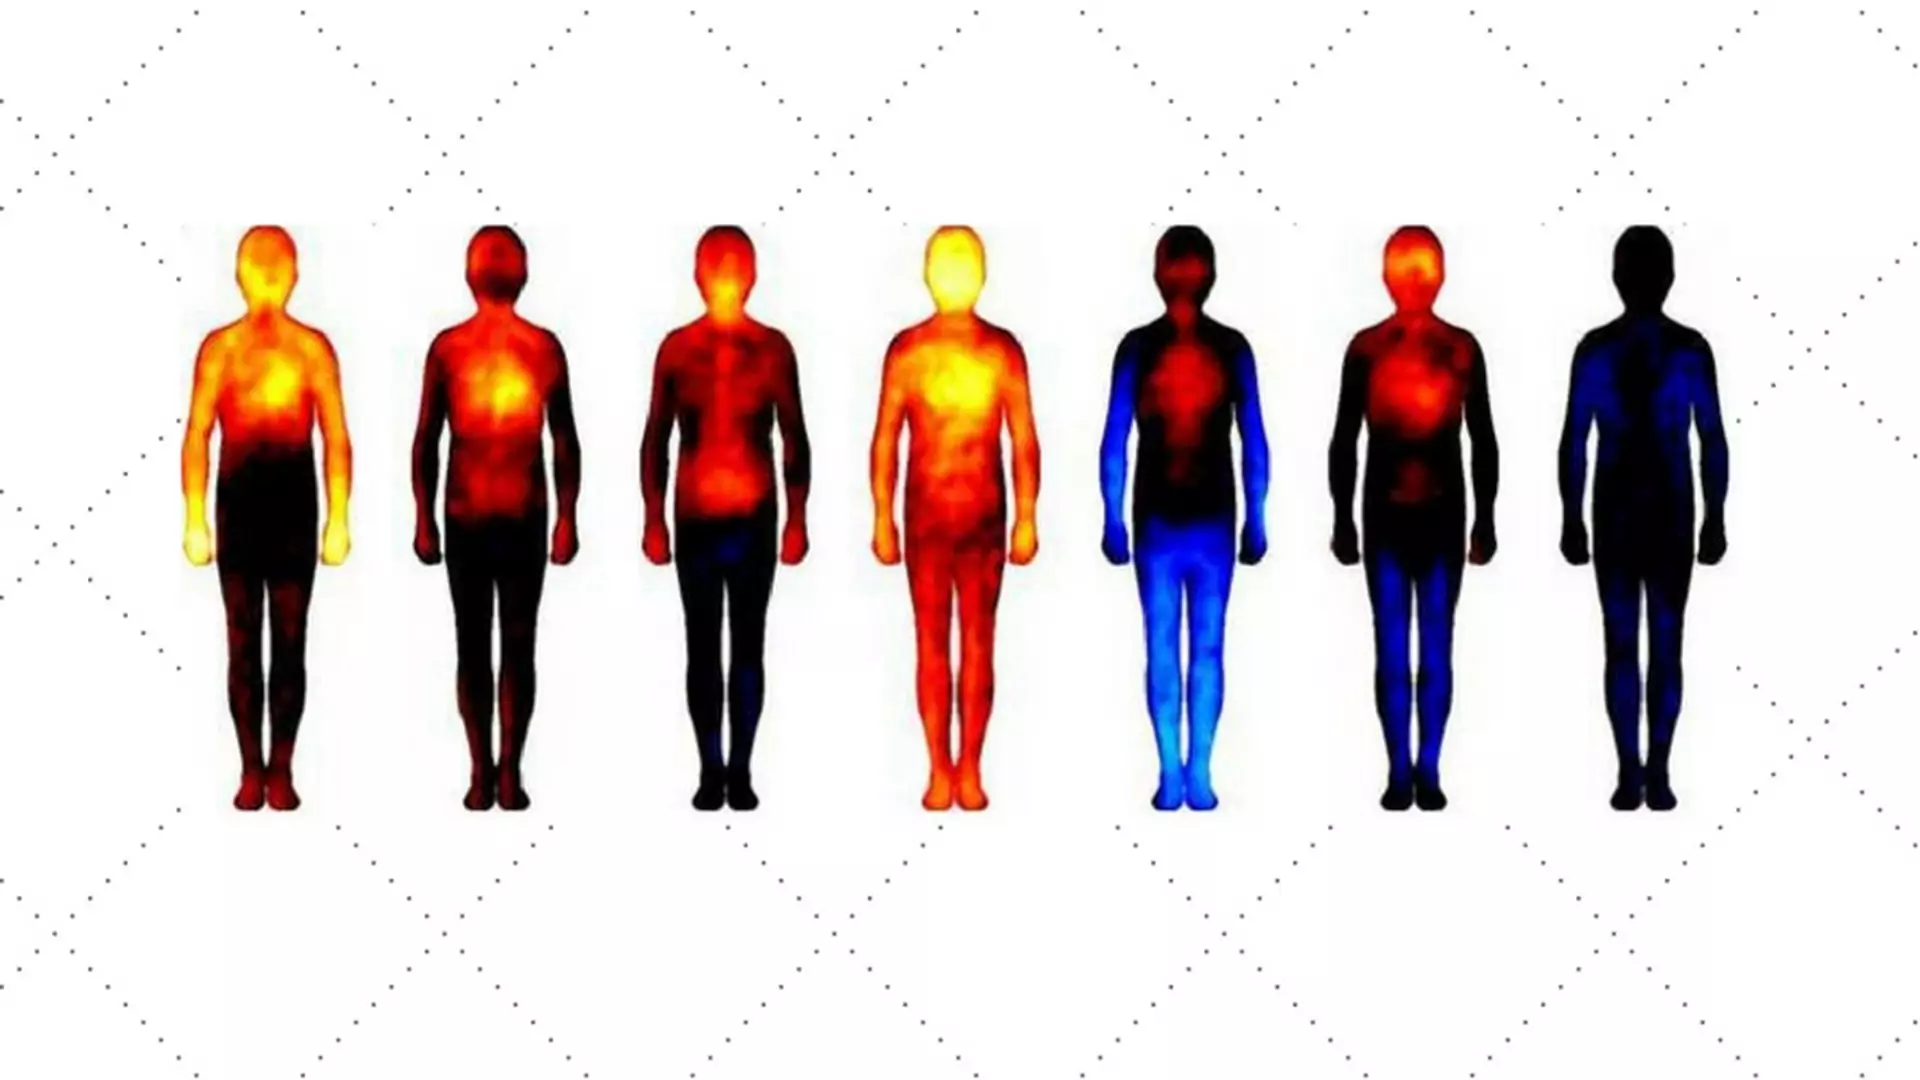 Mapa emocji ludzkiego ciała. Zobacz gdzie w ciele koncentrują się uczucia